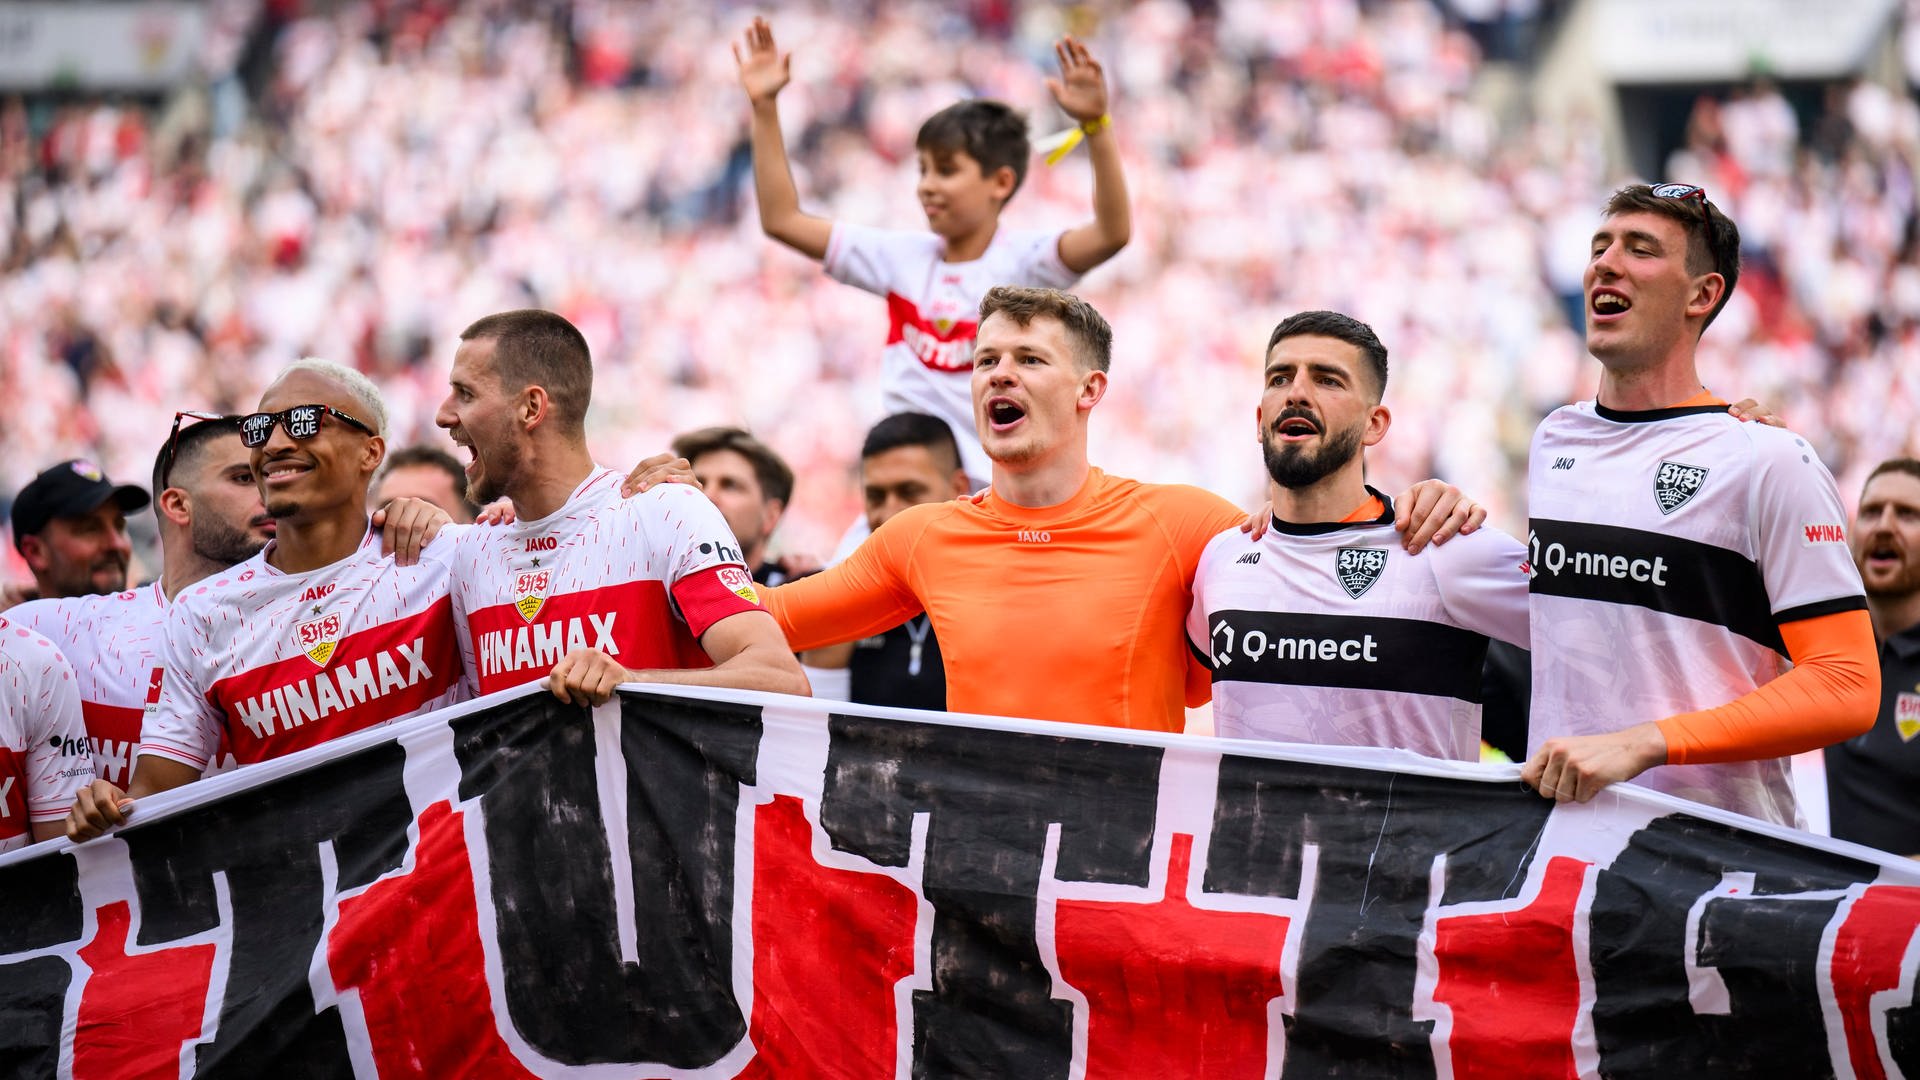 Von wegen Downfall - die Widerstandsfähigkeit des VfB Stuttgart hat beeindruckt